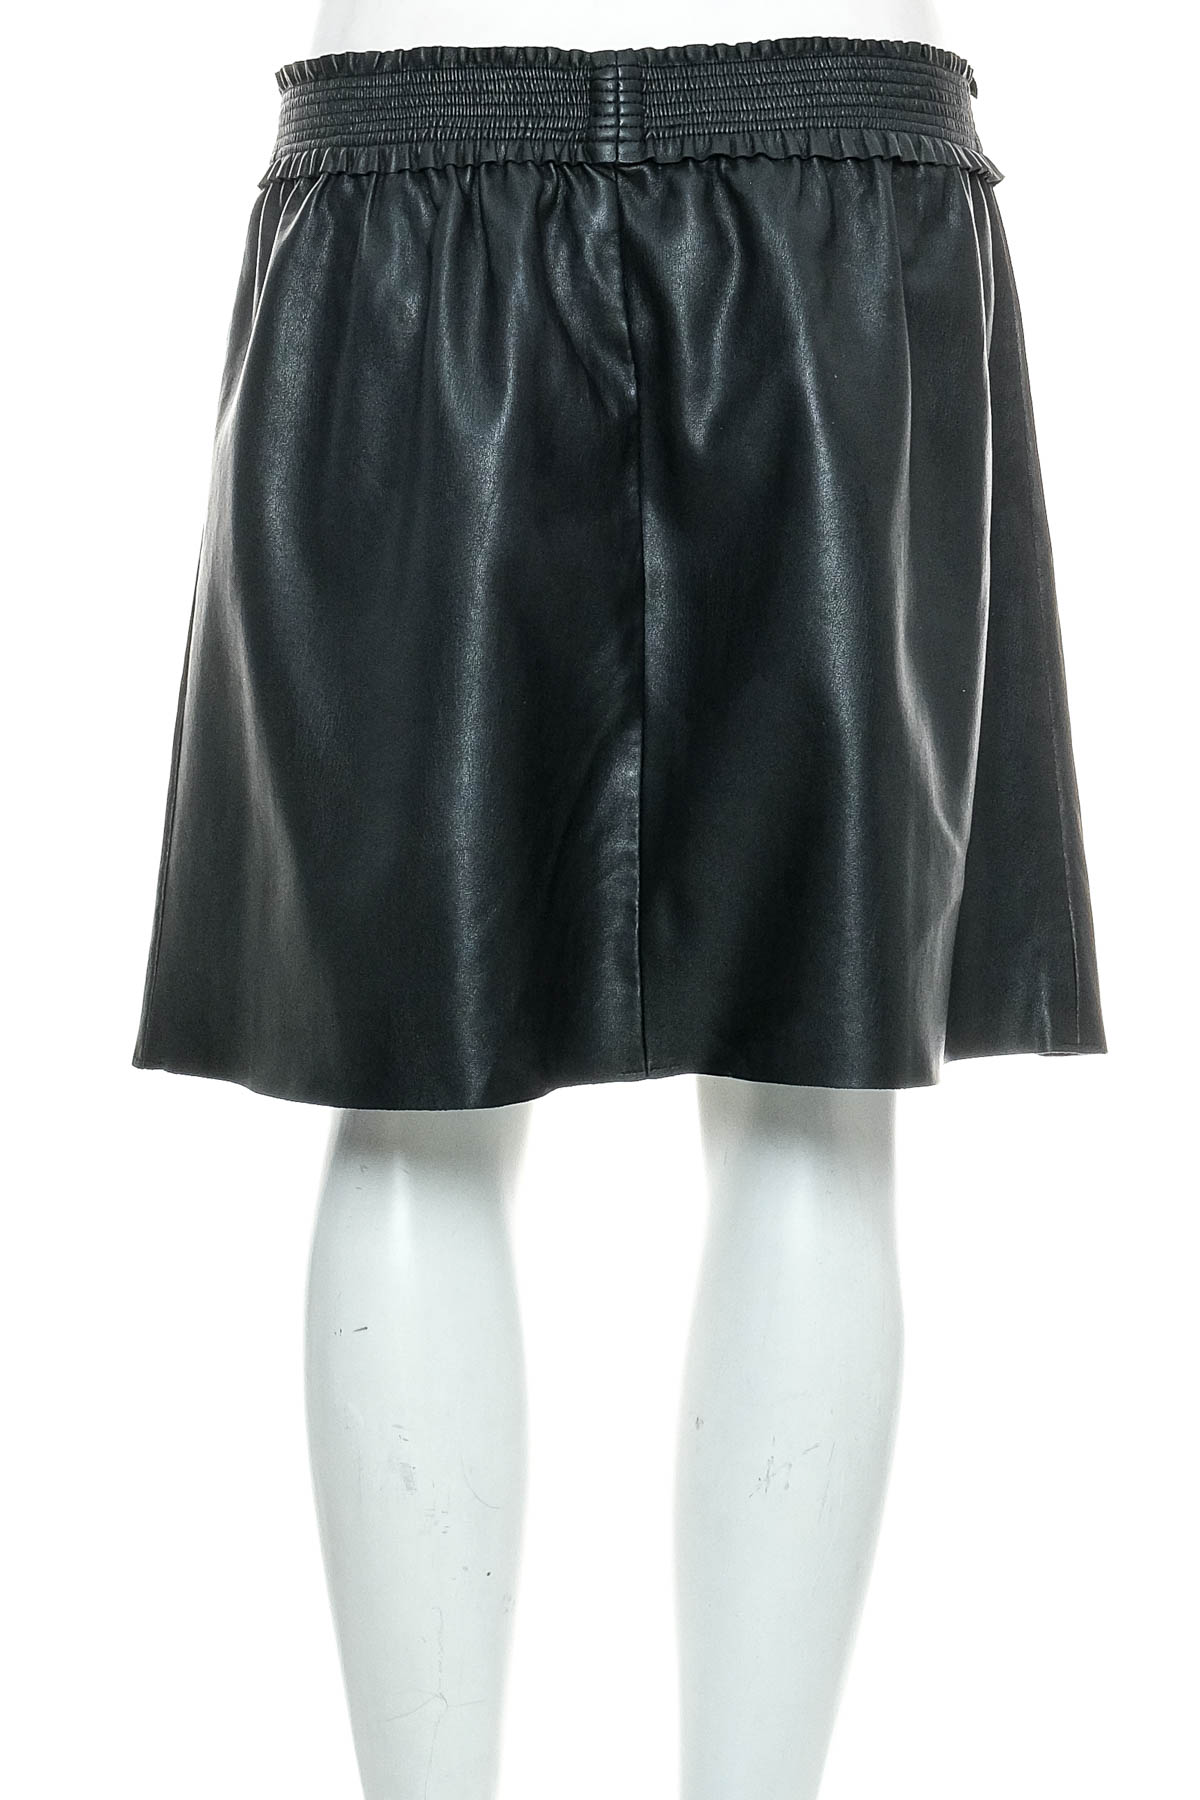 Leather skirt - YOUN! belgium - 1